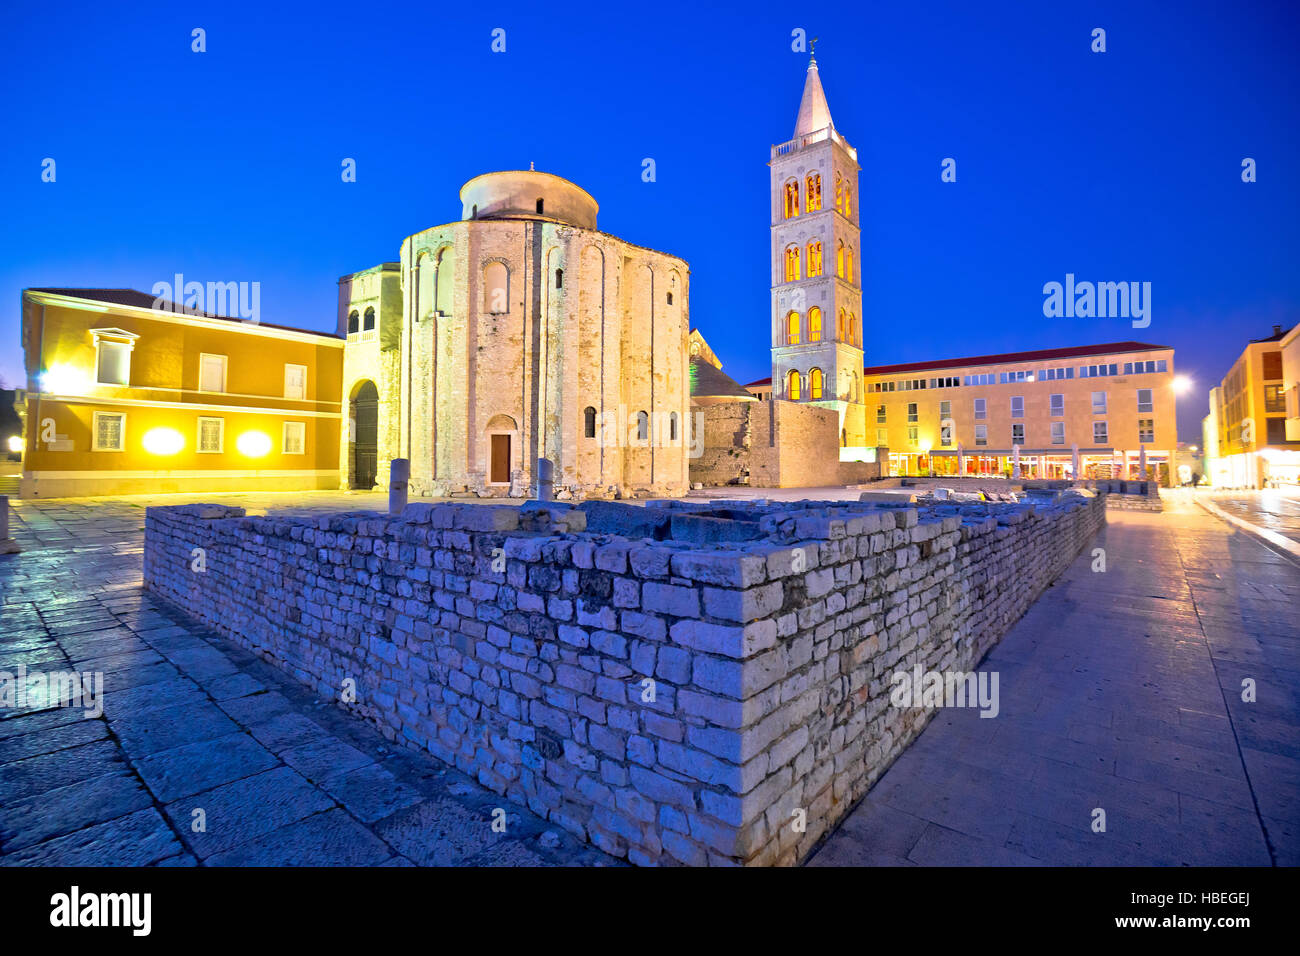 Zadar historic square and church evening view, Dalmatia, Croatia Stock Photo